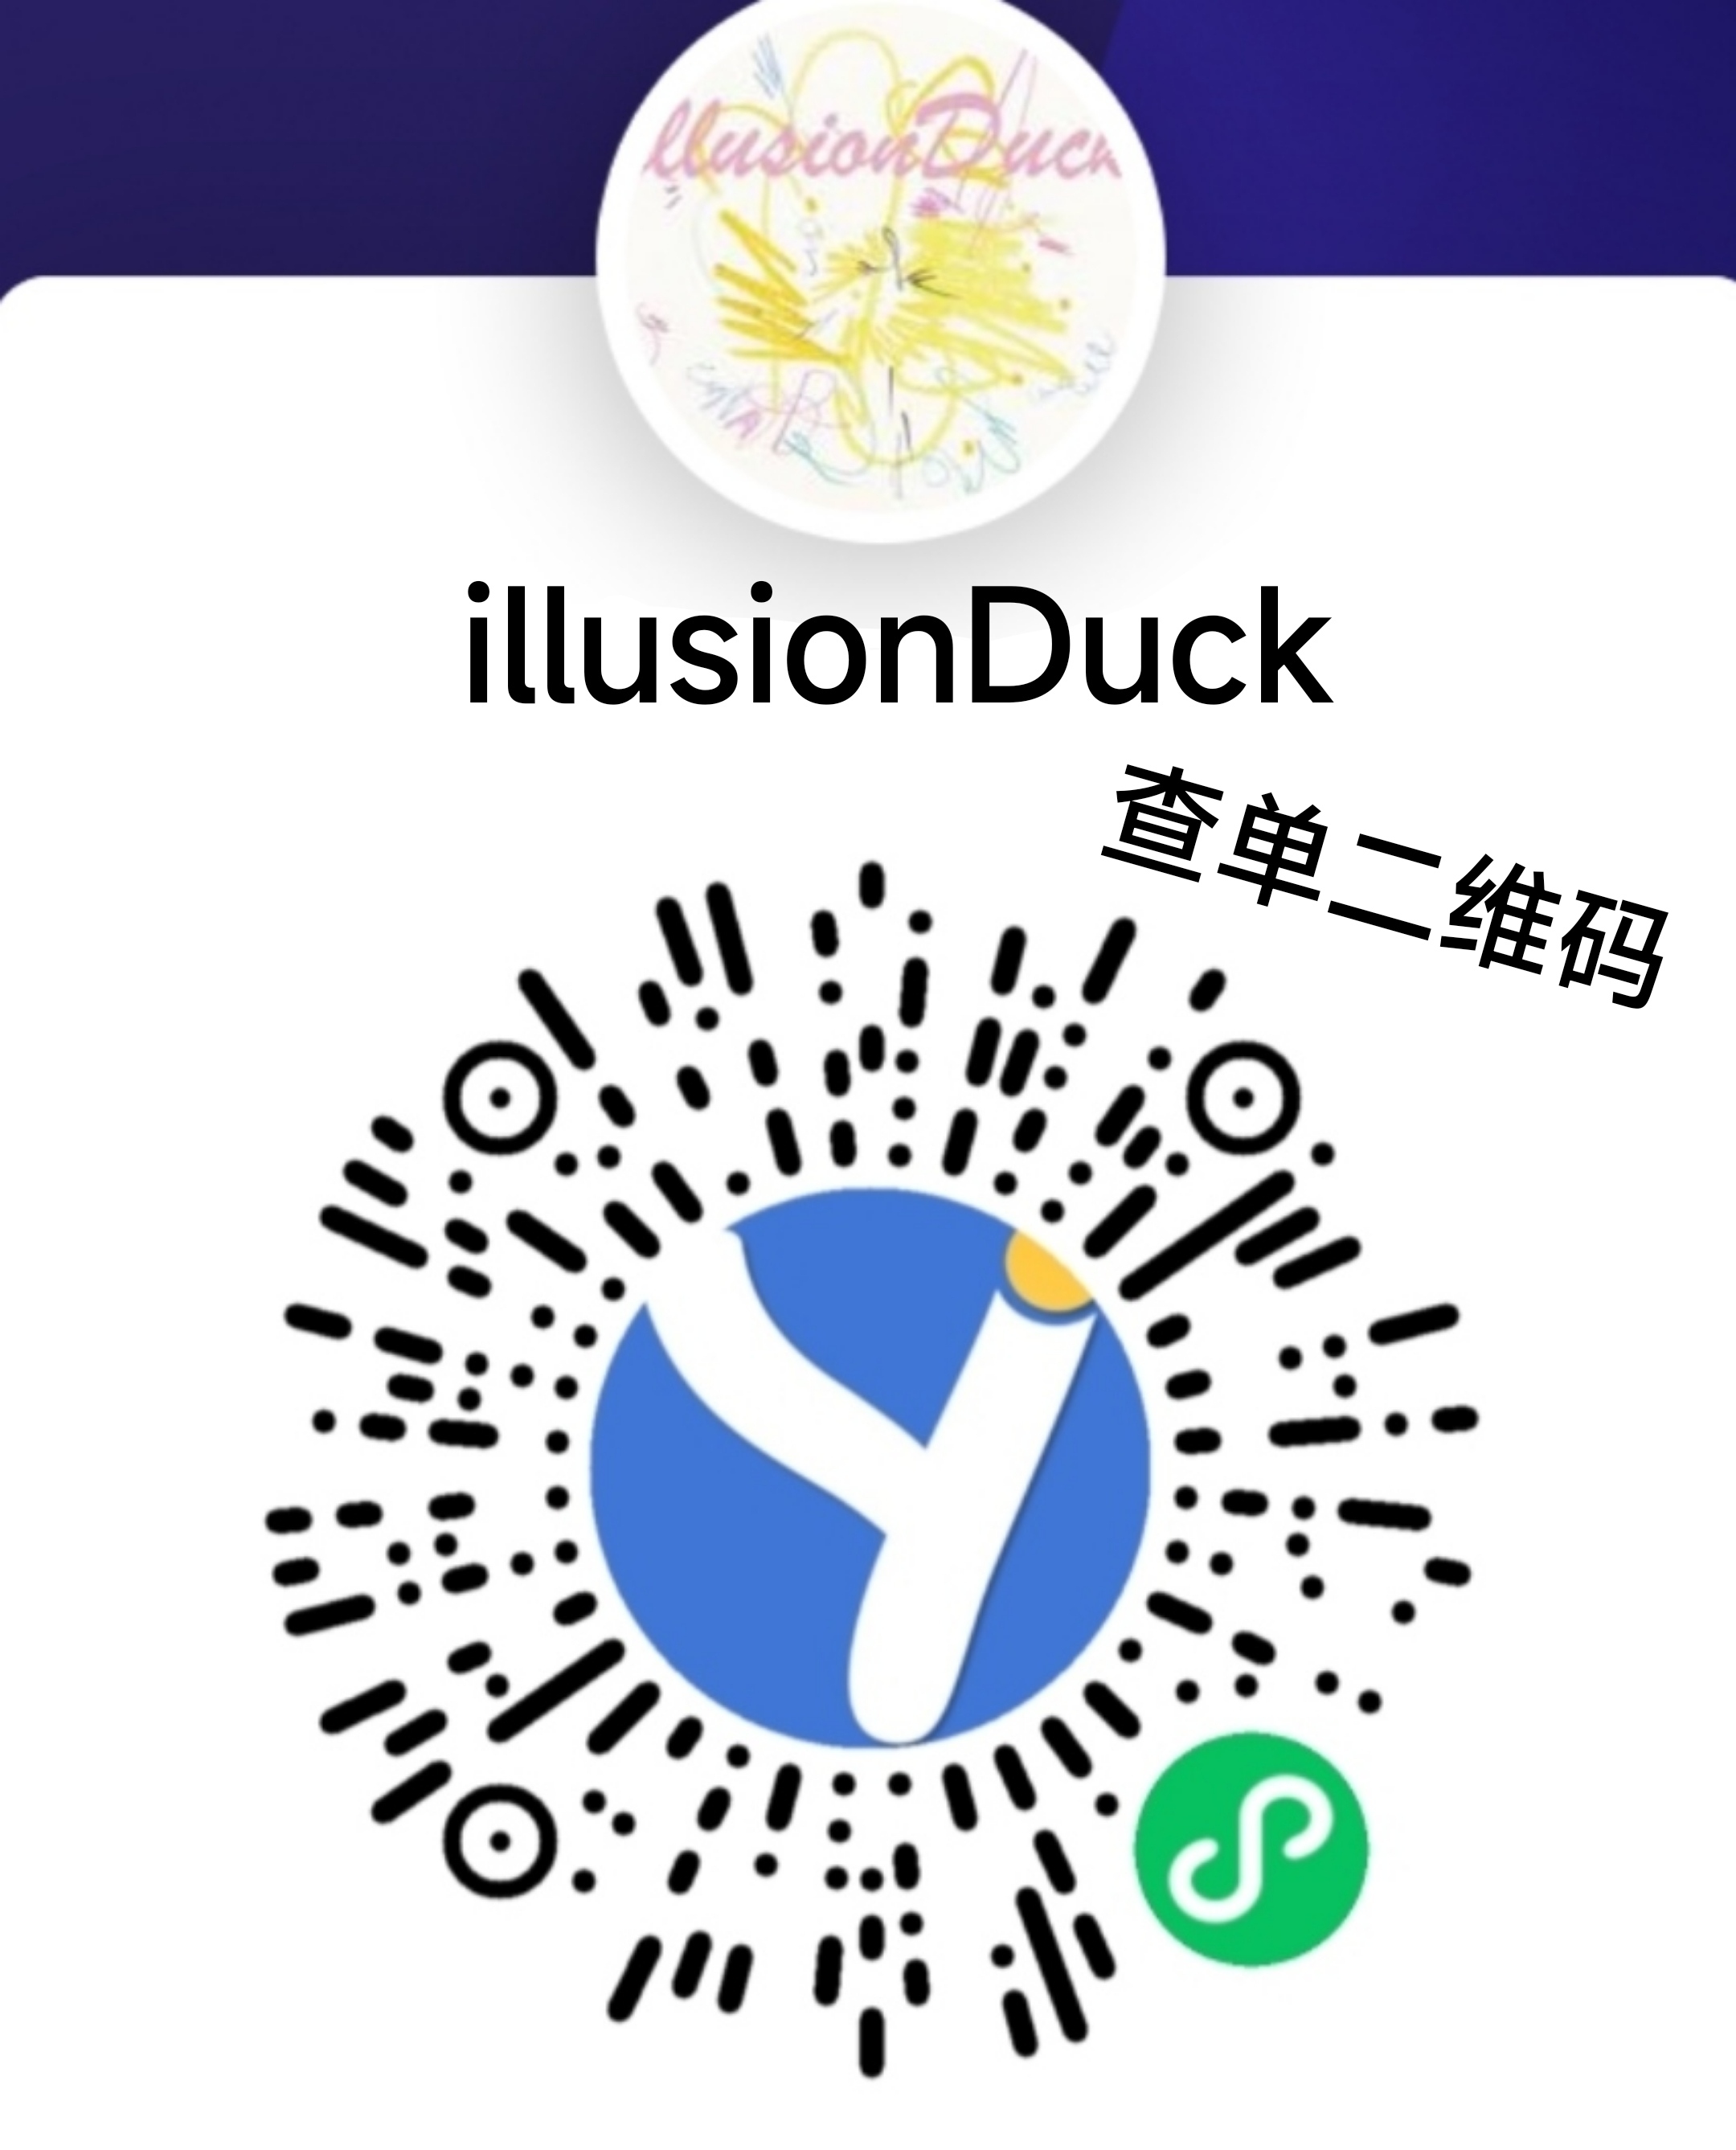 【年抛】IllusionDuck越来越上头的梦幻陷阱 五月心动特辑 - VVCON美瞳网